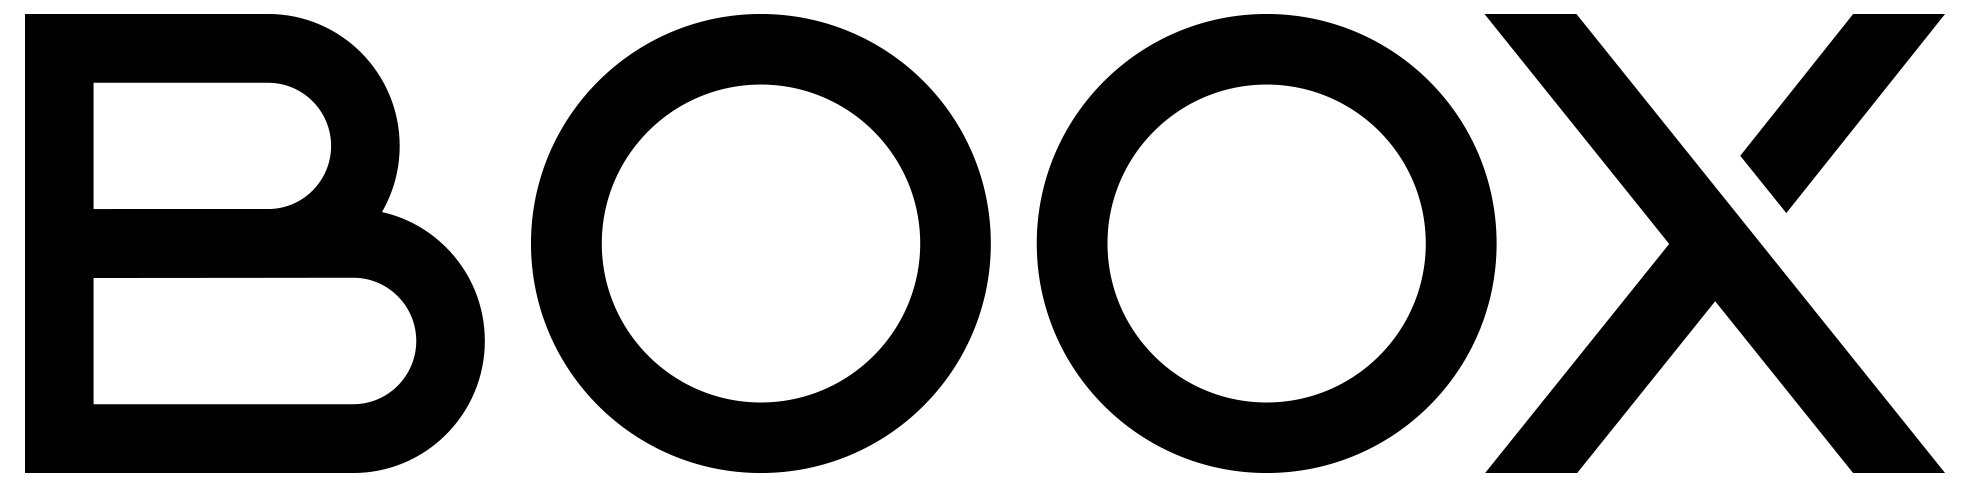 Onyx Boox Logo